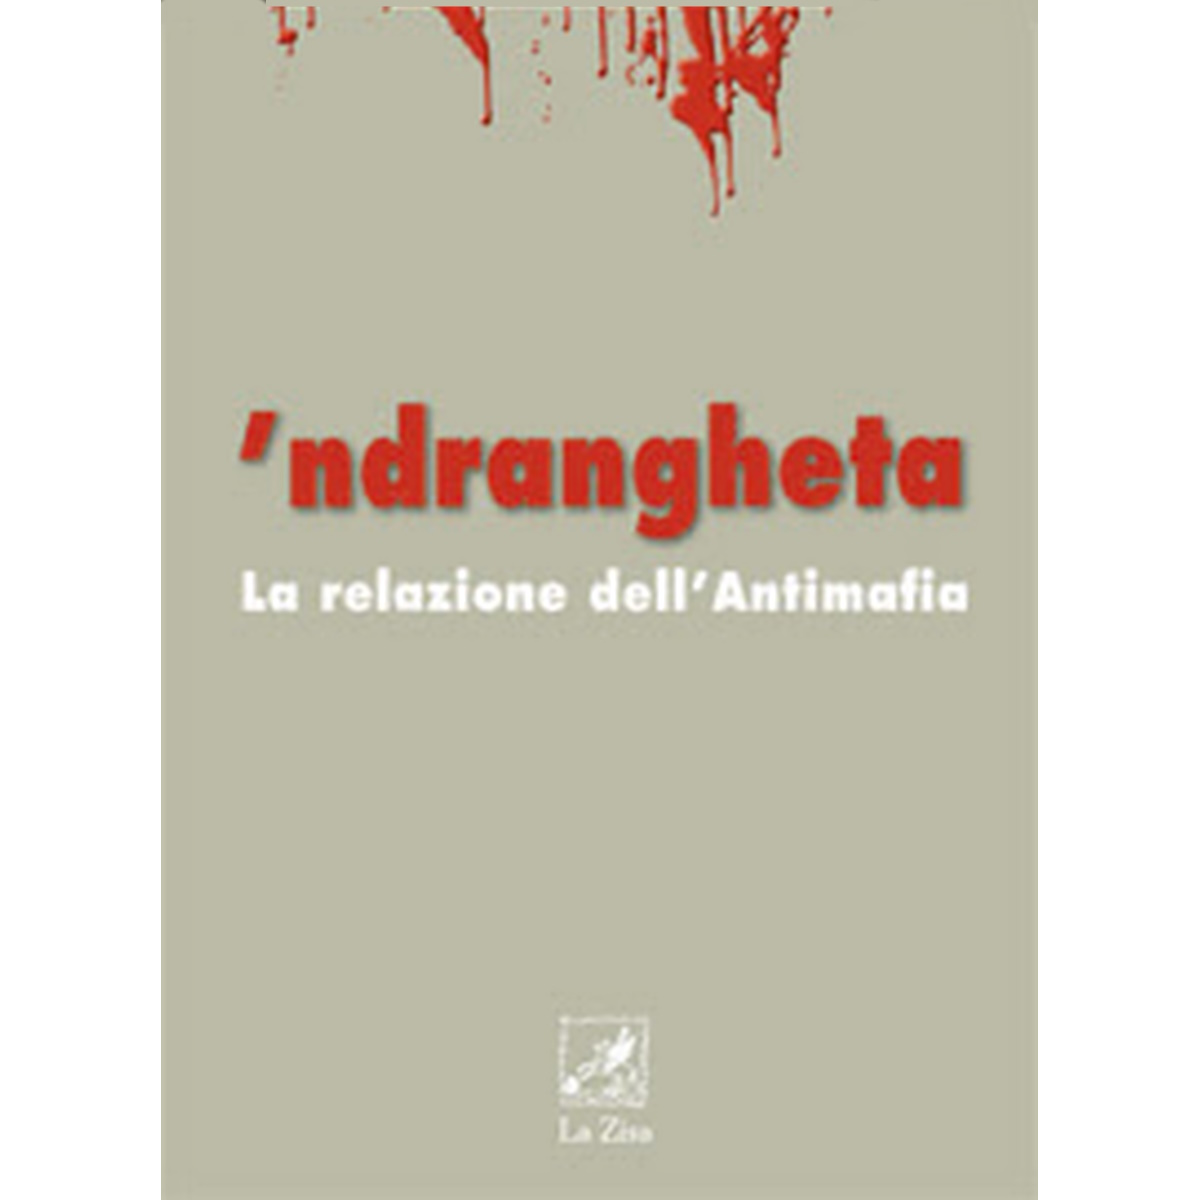 ‘Ndrangheta, la mafia liquida di Davide Romano e Maurizio Rizza